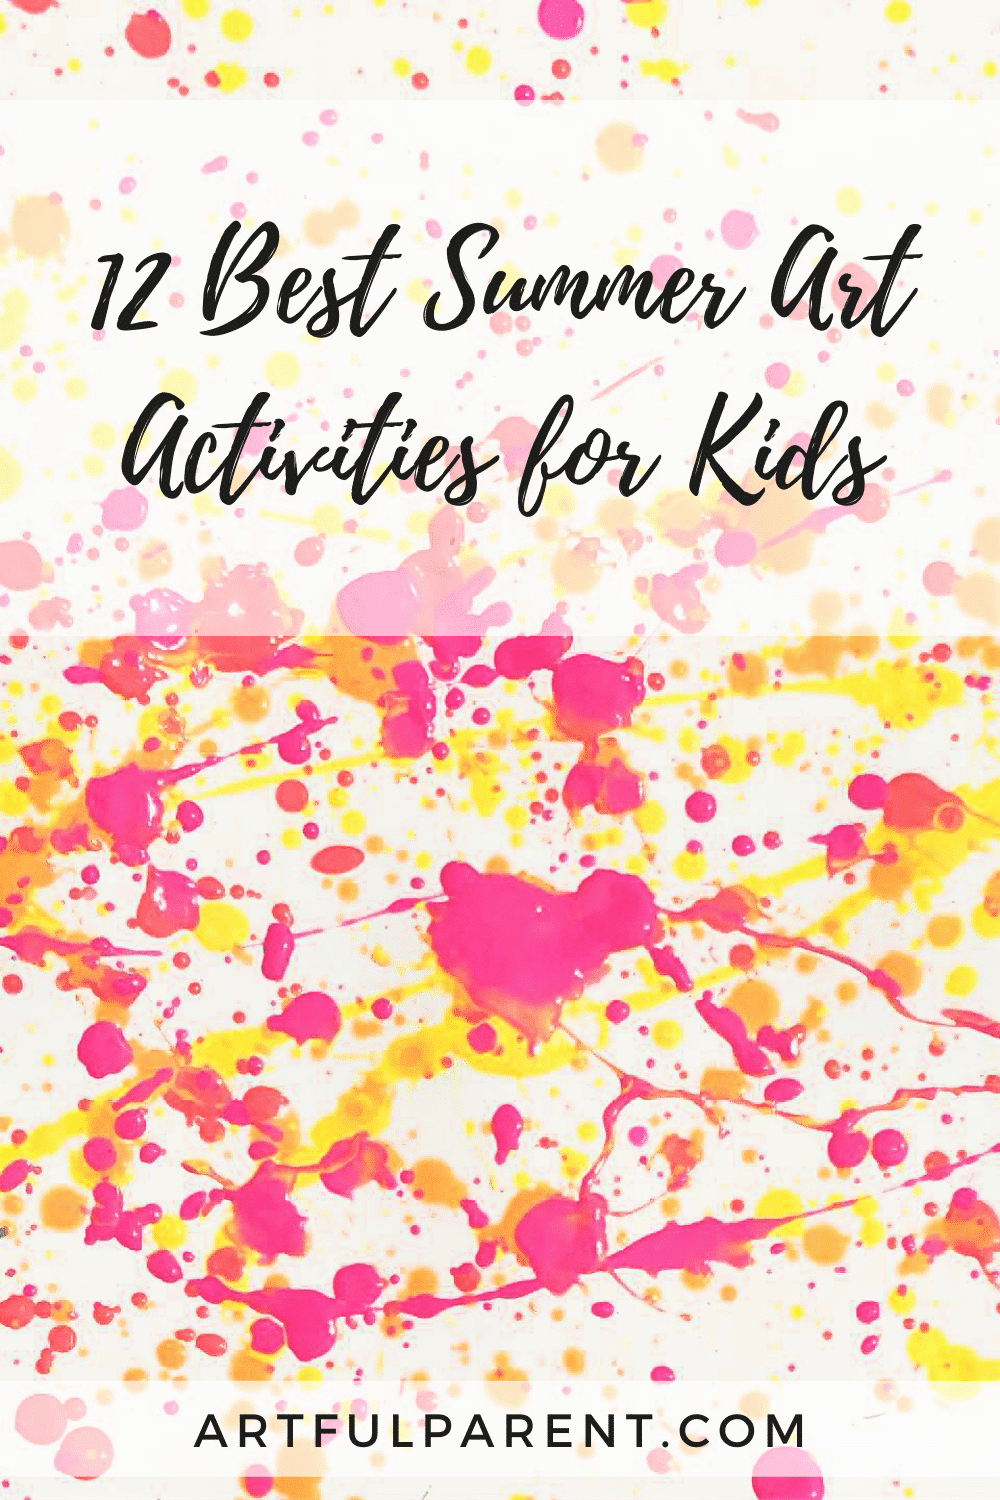 12 Best Summer Art Ideas for Kids